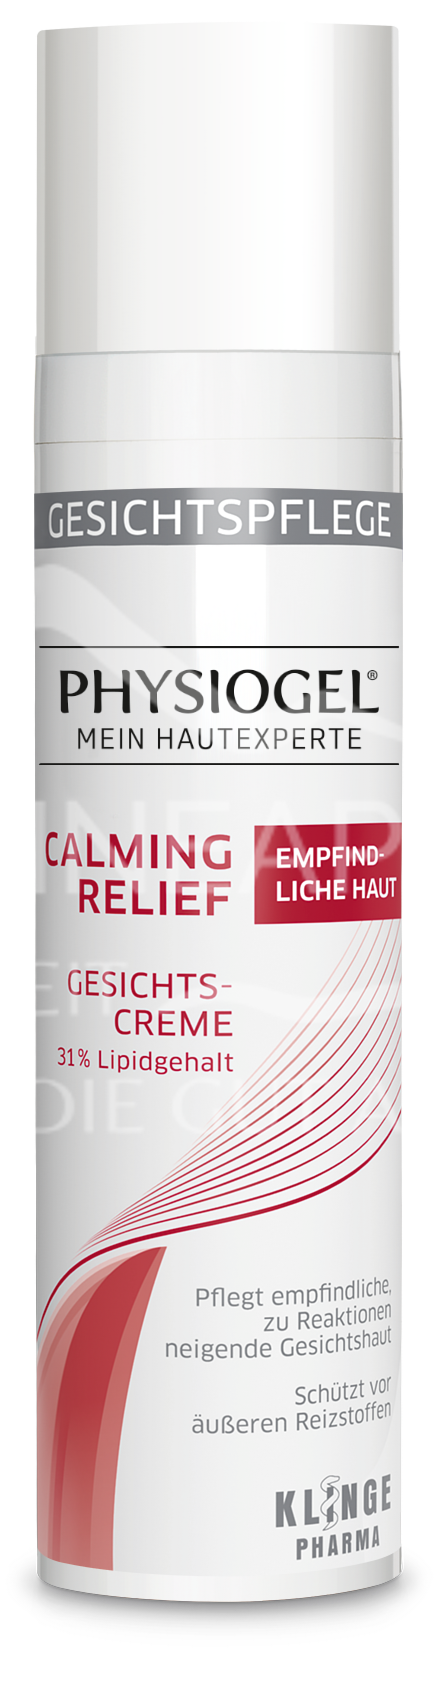 Physiogel® Calming Relief Gesichtscreme - Empfindliche Haut